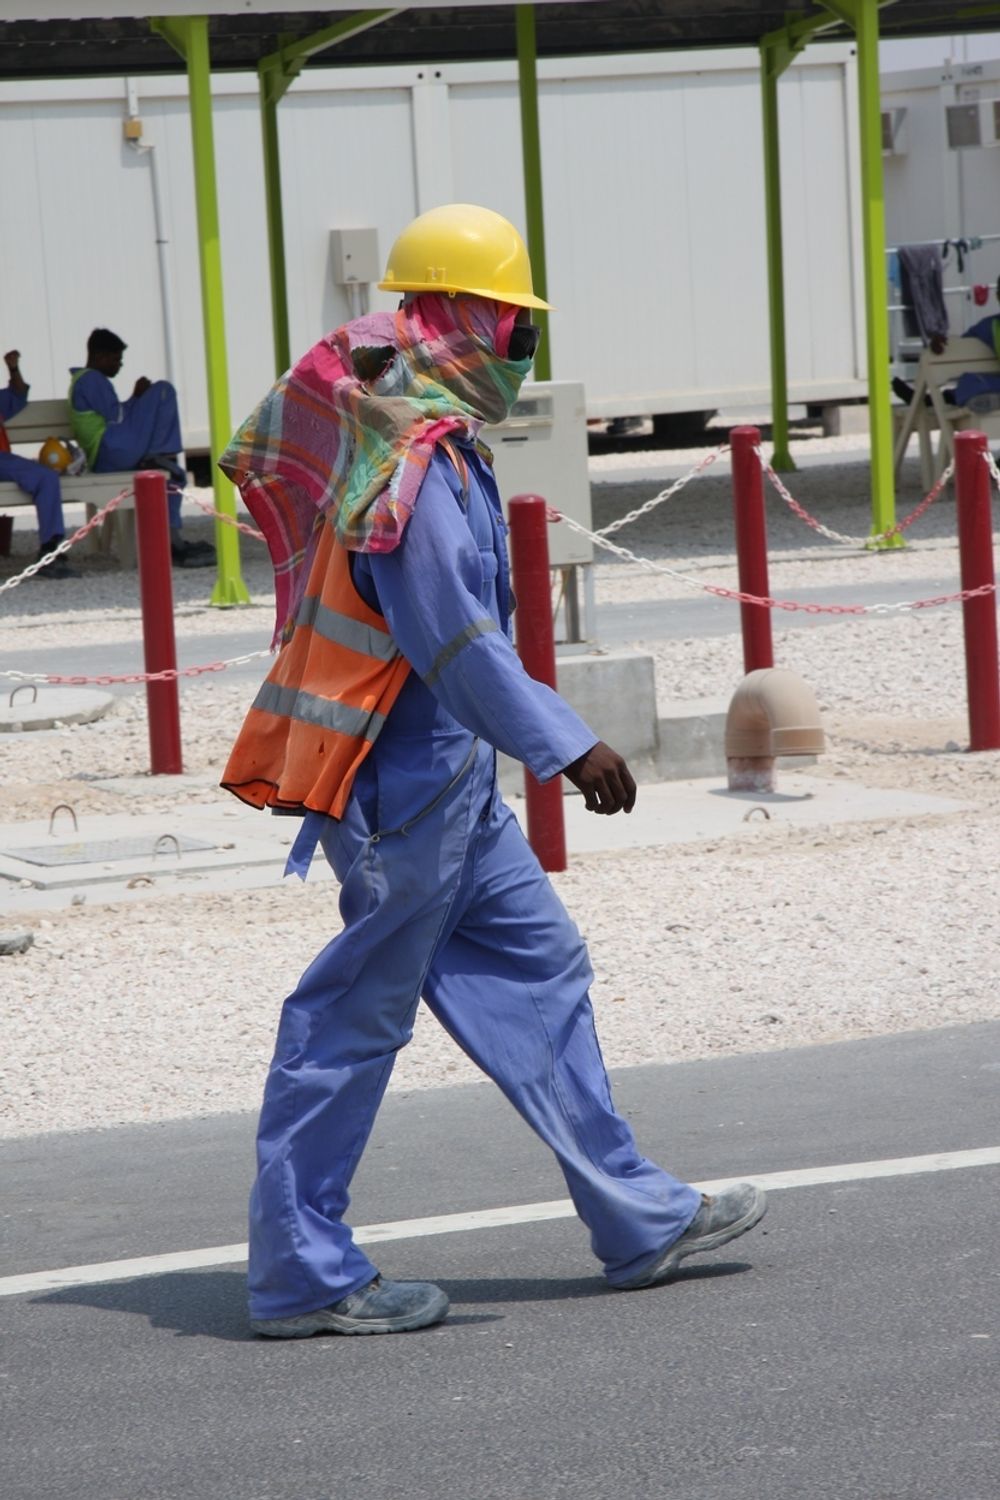 BRUDD PÅ ARBEIDSRETT: Ifølge FNs særorganisasjon for arbeidsrett, ILO, er arbeidsforholdene til de Hydro-ansatte i Qatar brudd på internasjonal arbeidsrett.